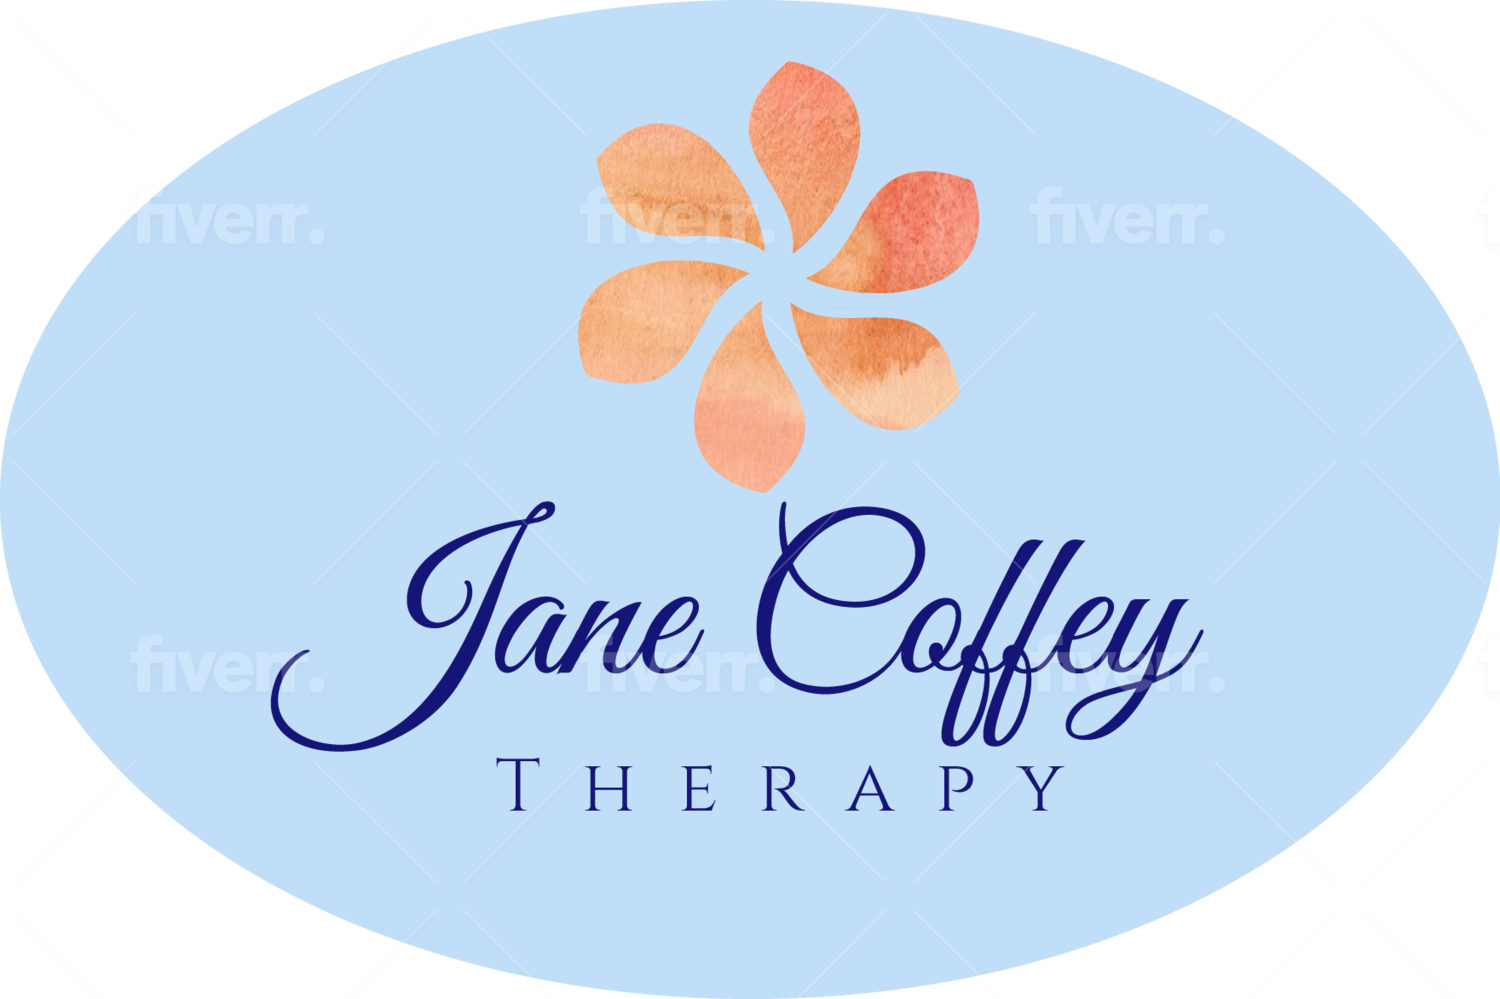 Jane Coffey